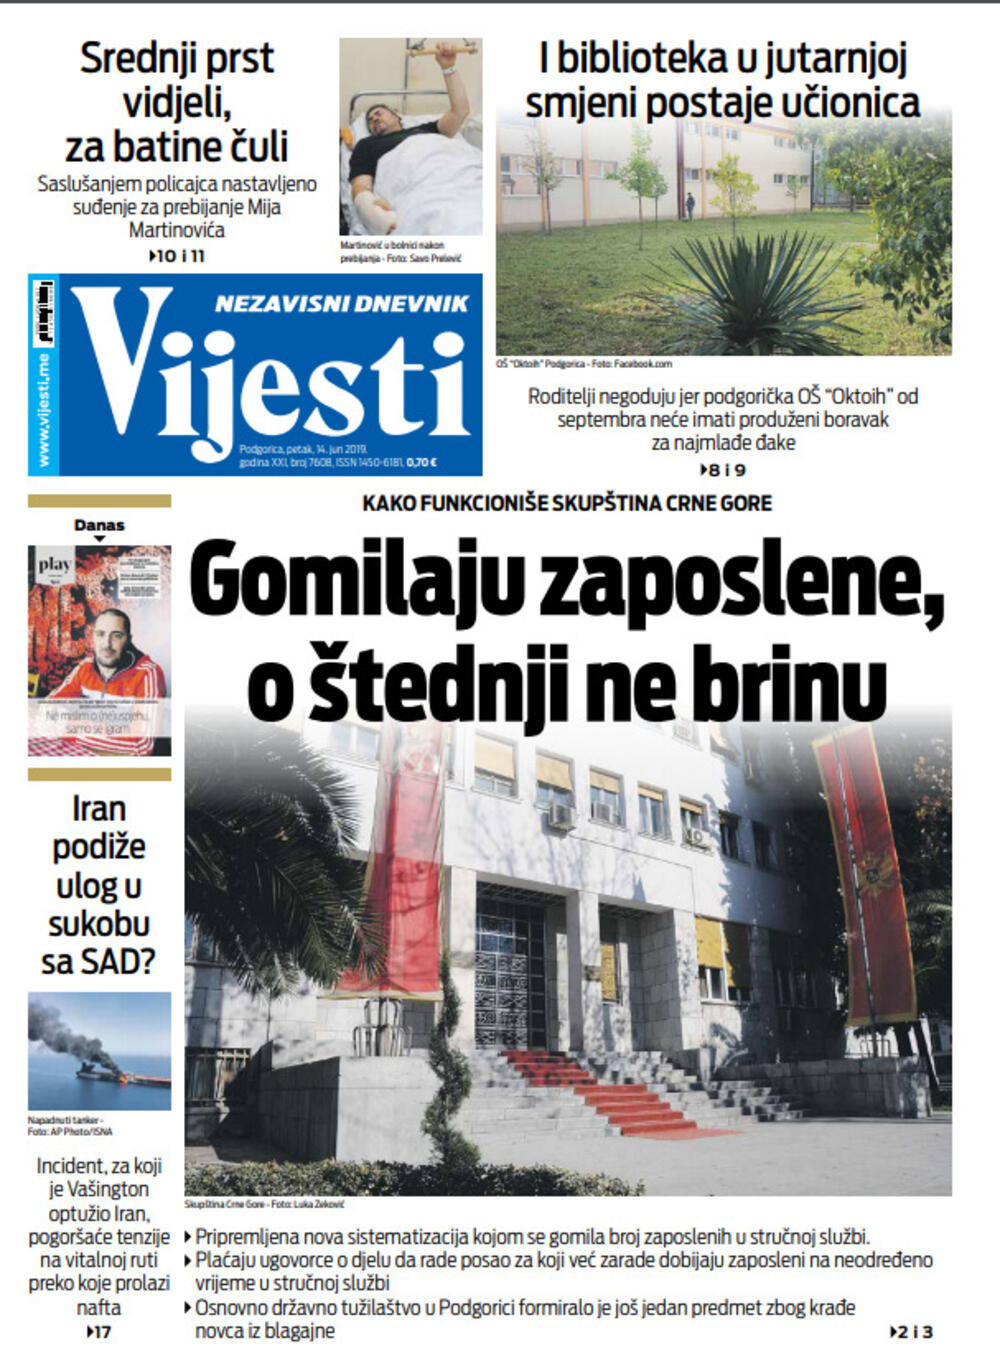 Naslovna strana "Vijesti" 15.6., Foto: Vijesti